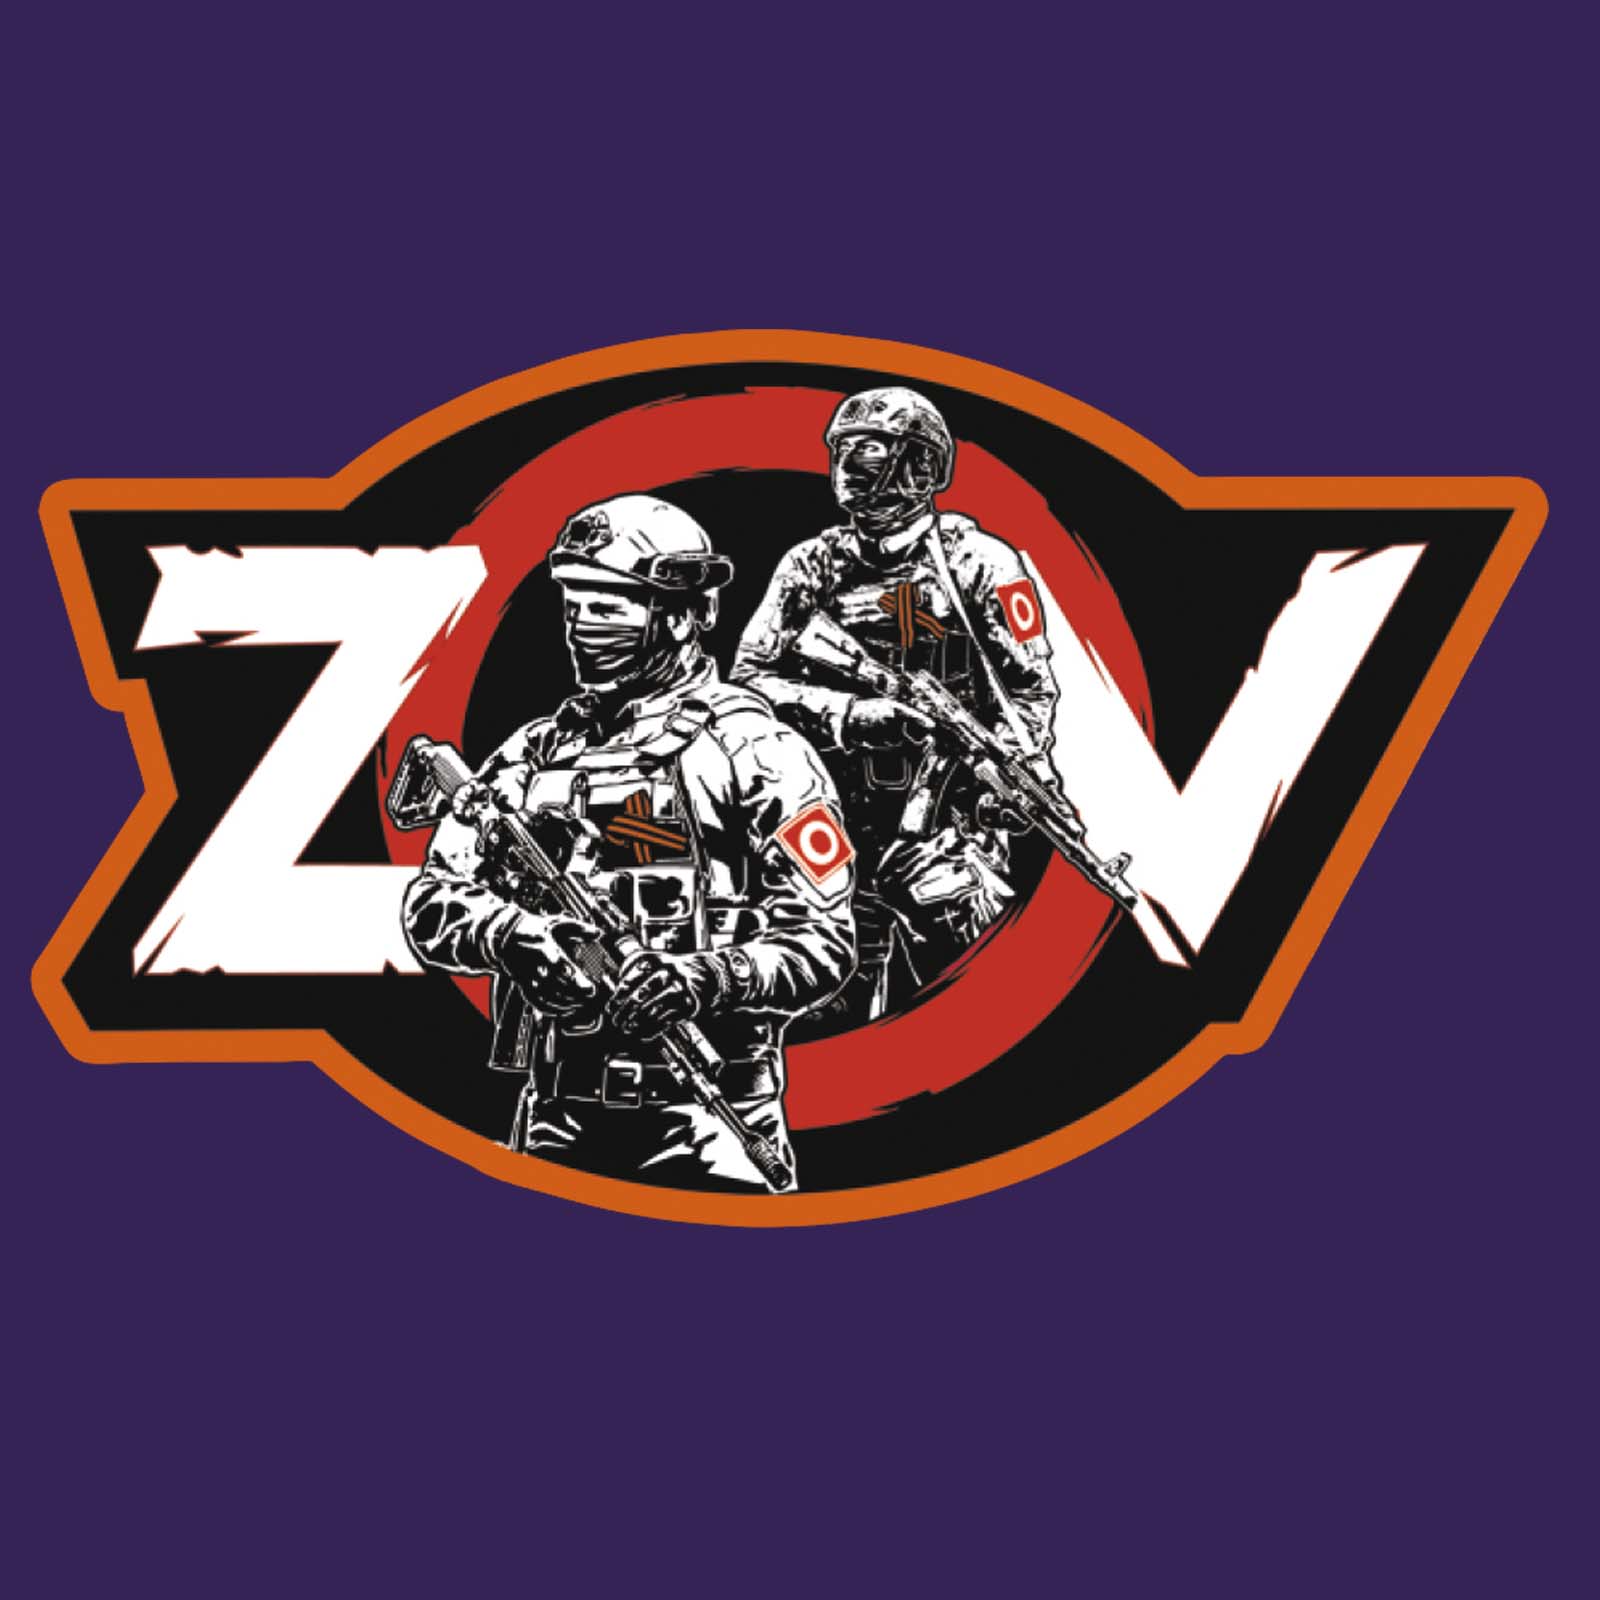 Купить мужскую темно-фиолетовую бейсболку ZVO выгодно